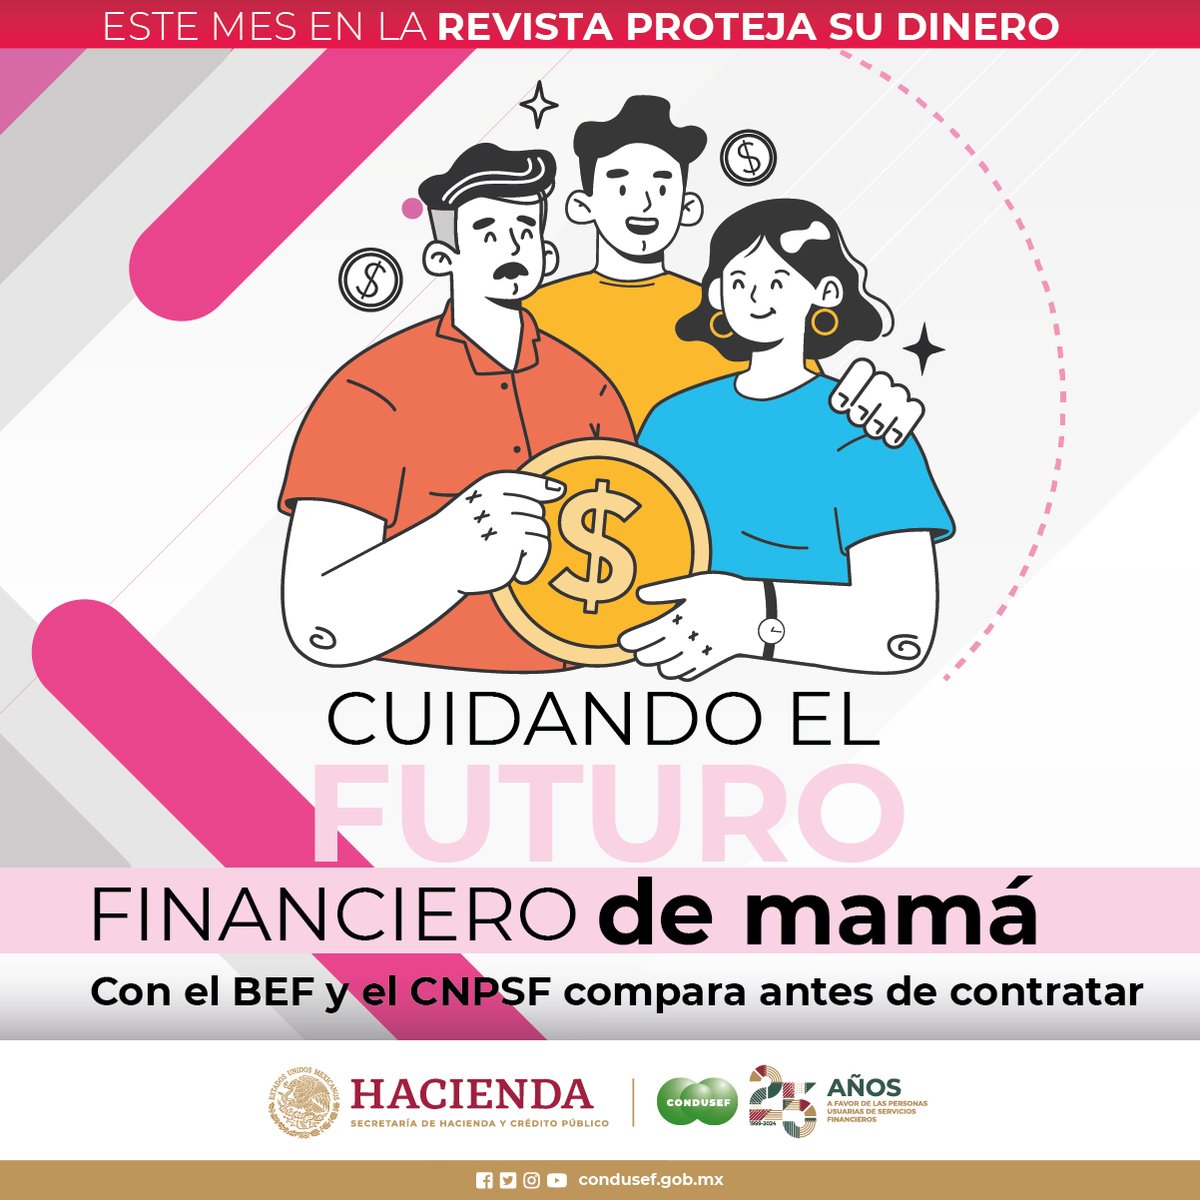 ¡Celebremos a Mamá, cuidando su futuro financiero! haz de este día un momento especial con opciones pensadas para ella. @BuroEntidadesMx #CNPSF revista.condusef.gob.mx